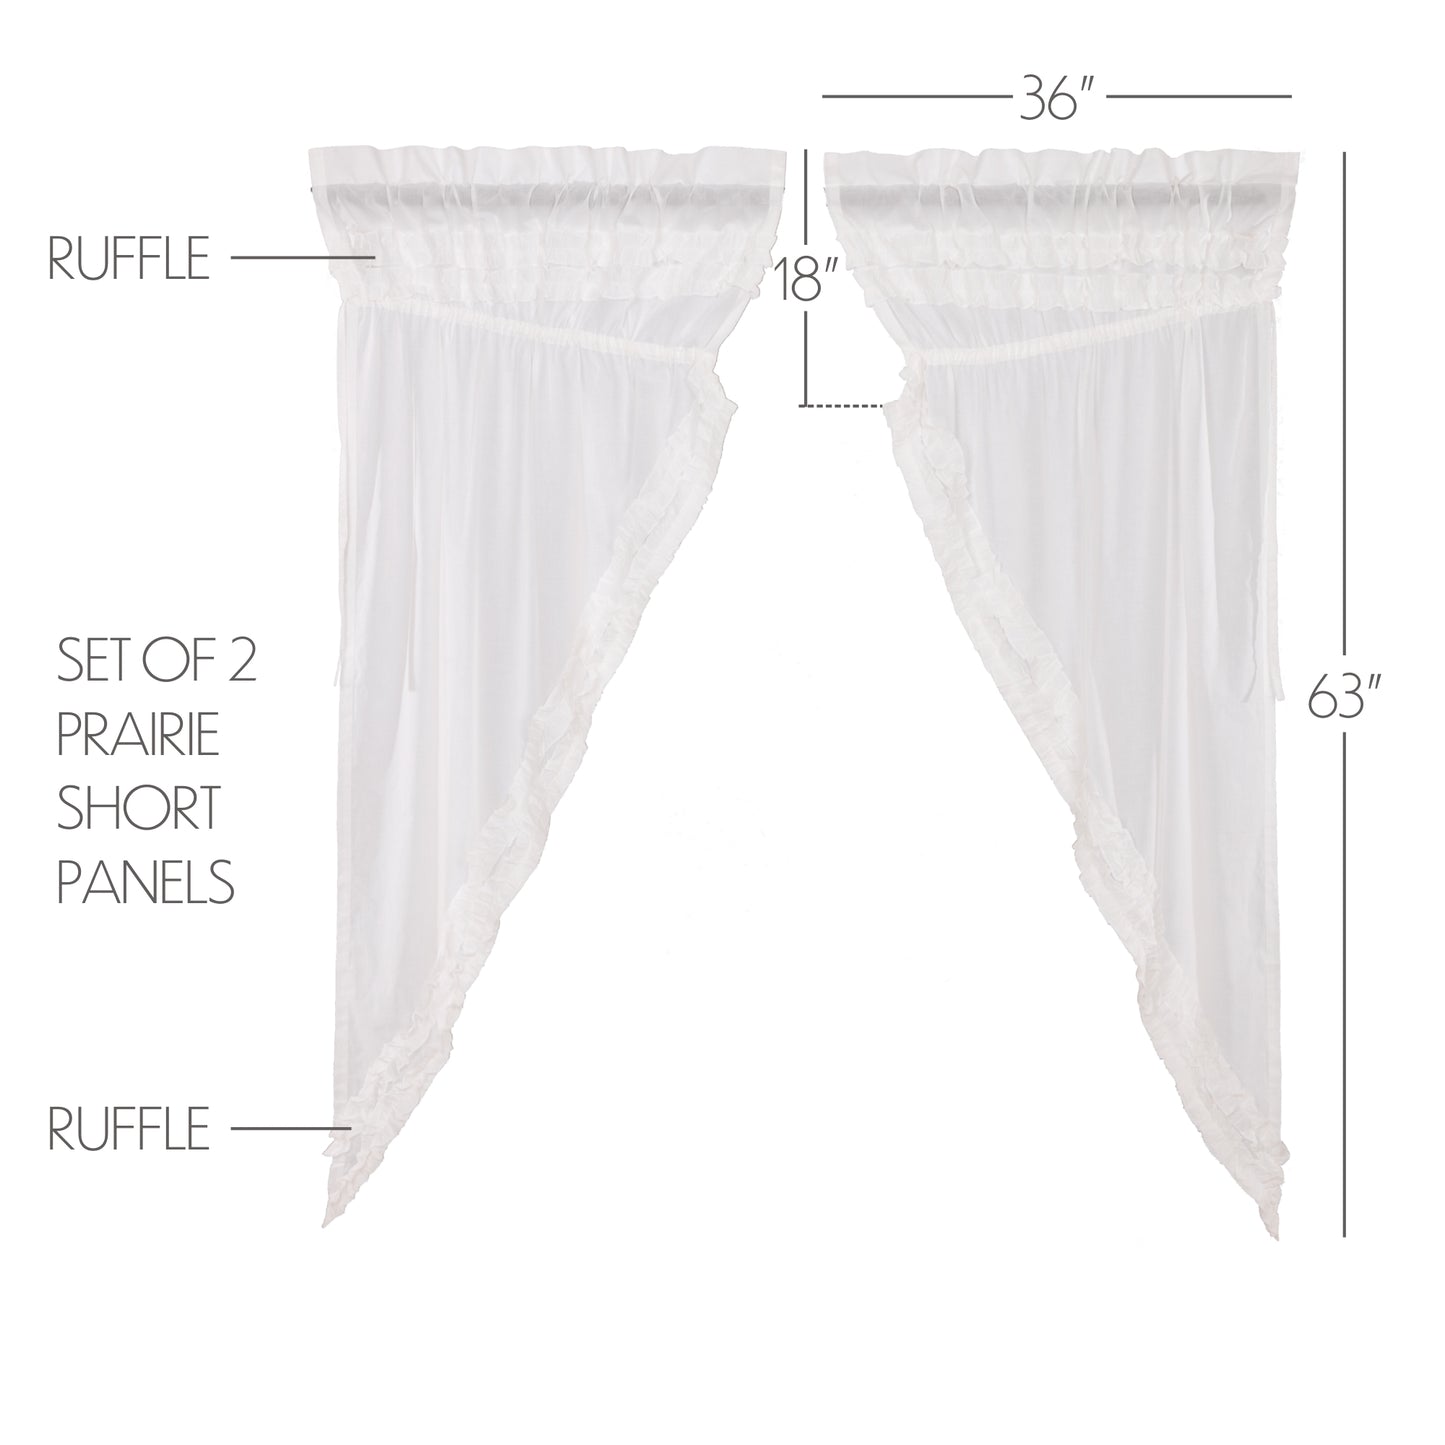 51401-White-Ruffled-Sheer-Petticoat-Prairie-Short-Panel-Set-of-2-63x36x18-image-1